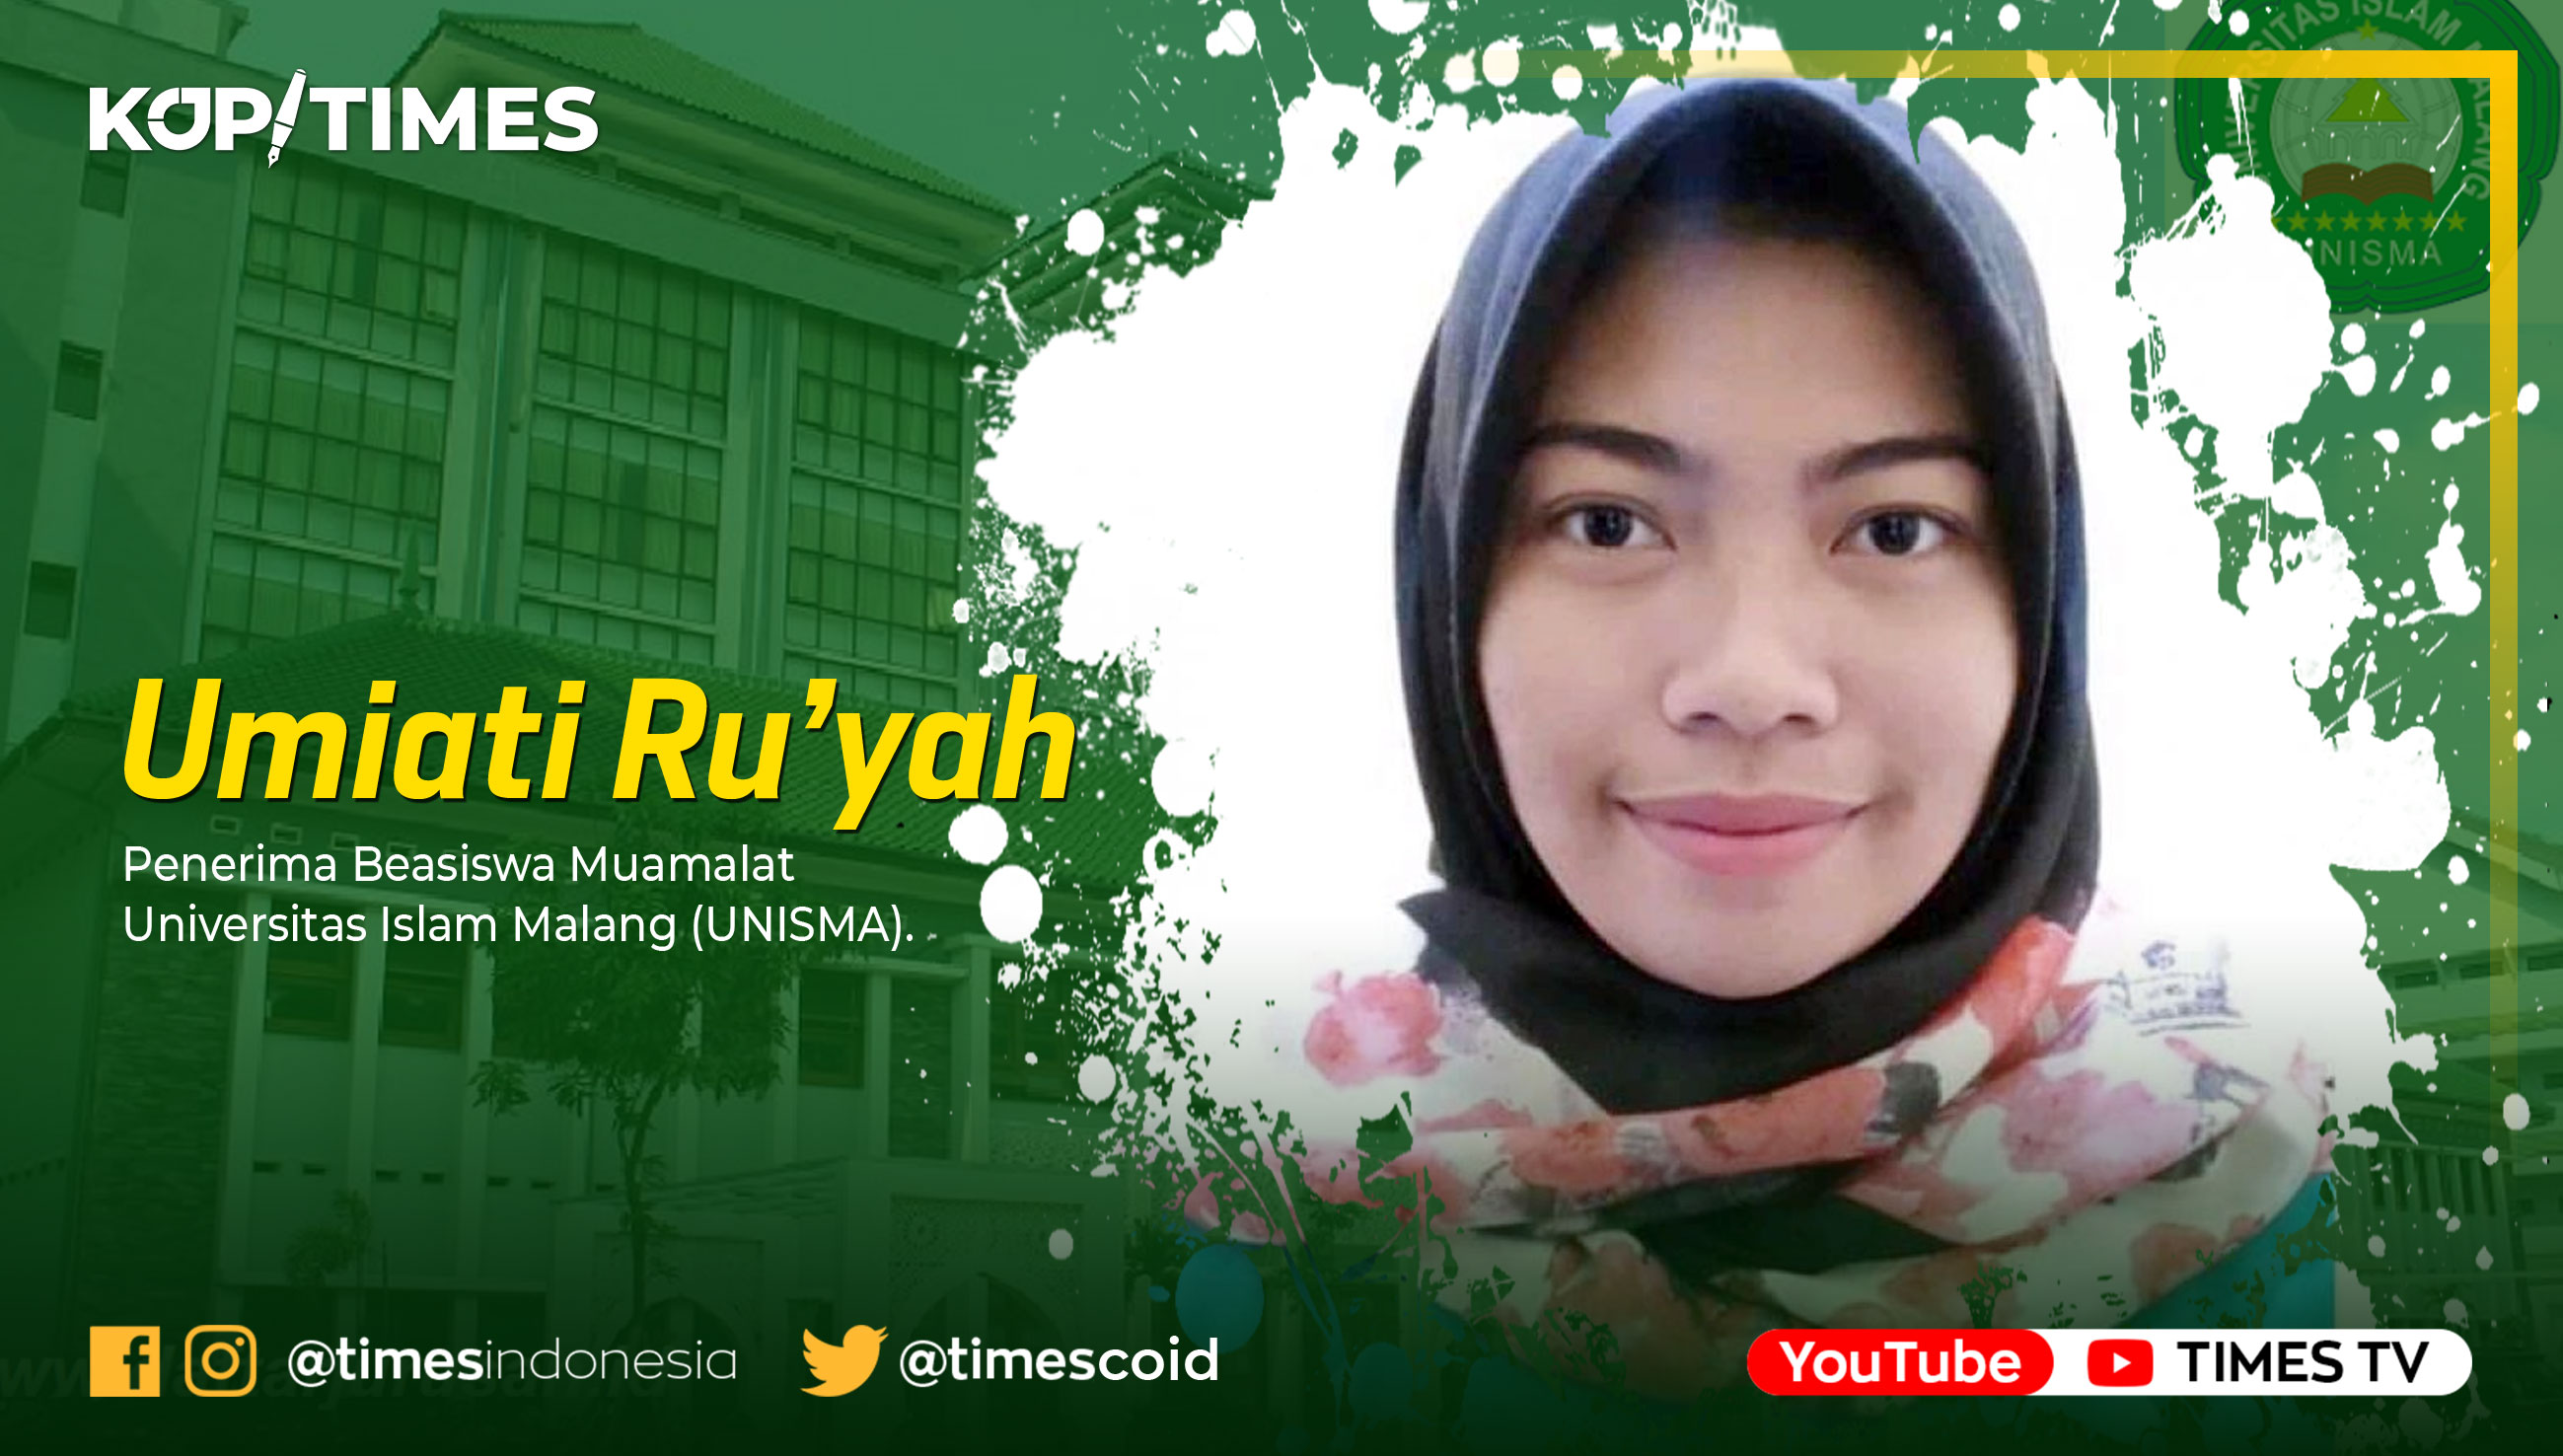 Umiati Ru’yah, Penerima Beasiswa Muamalat Universitas Islam Malang (UNISMA).